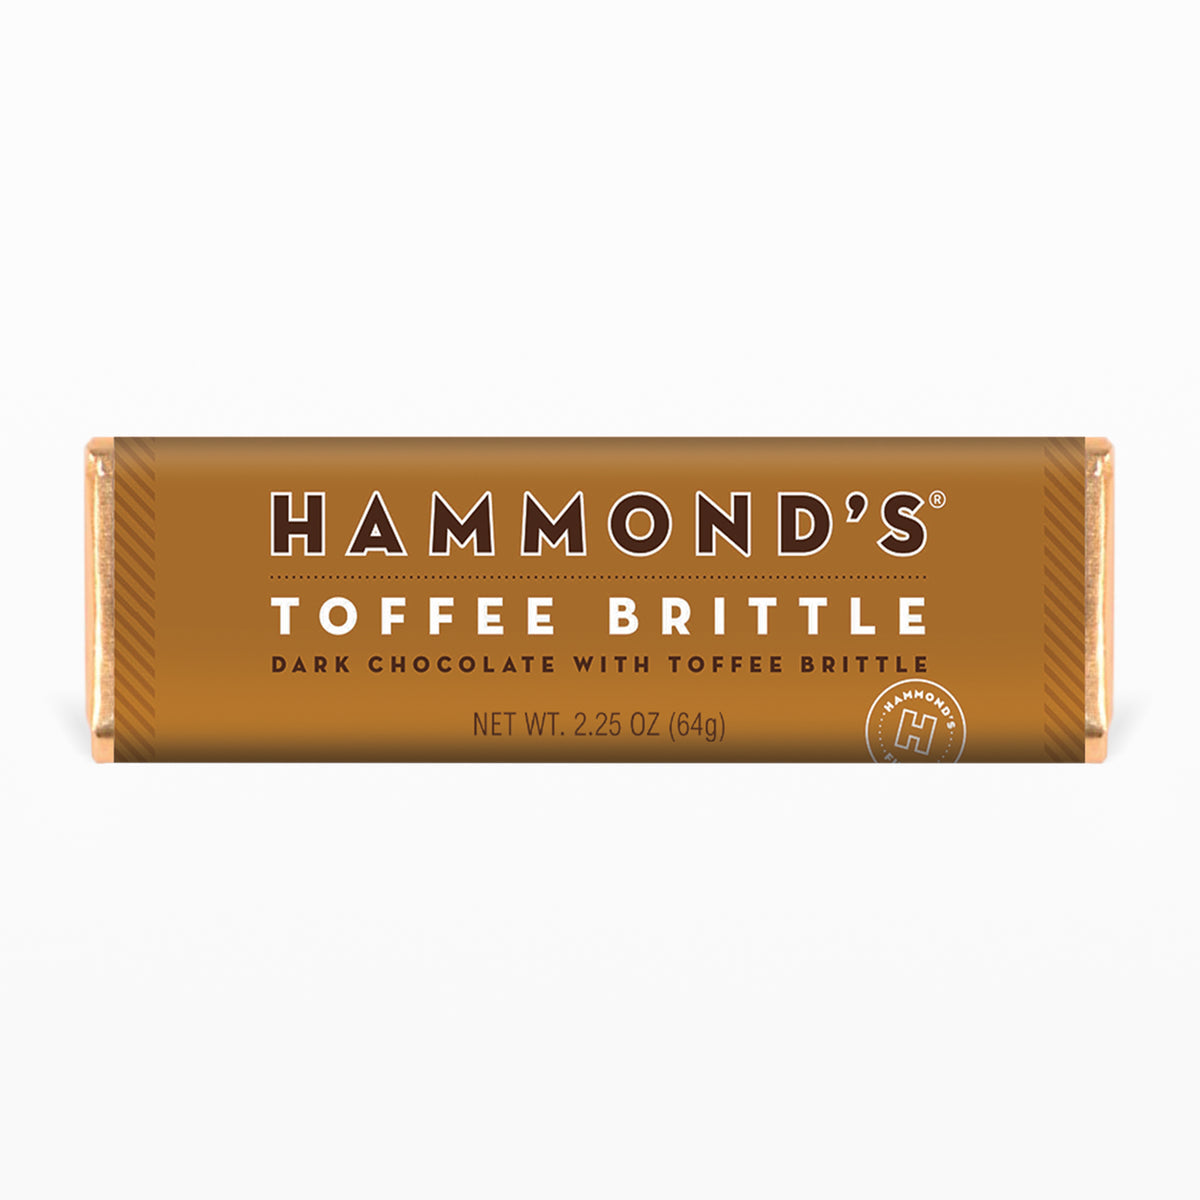 Toffee Brittle Dark Chocolate Bar on white